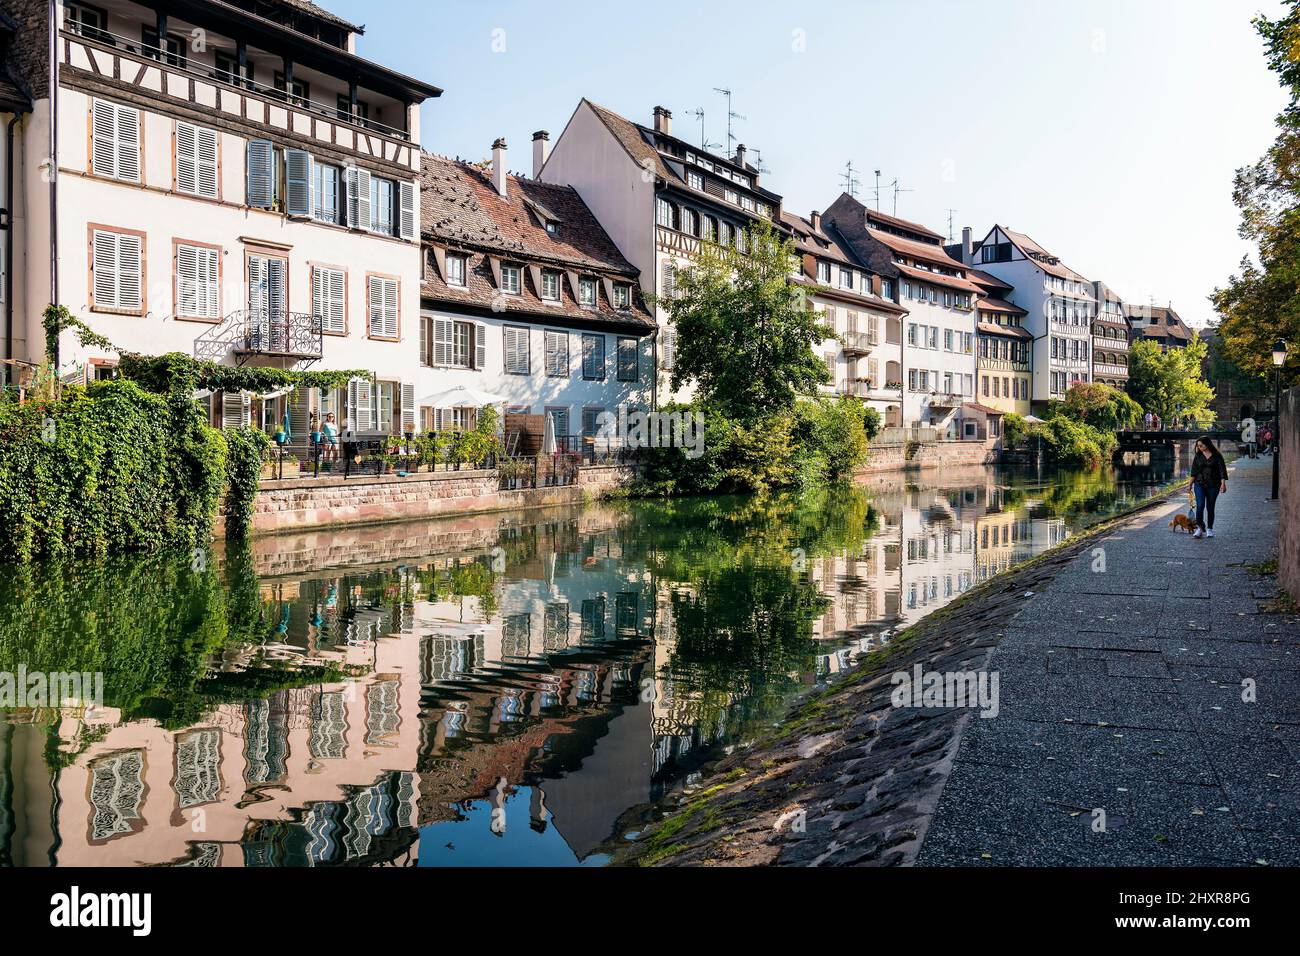 Francia, Estrasburgo, el centro histórico declarado Patrimonio de la Humanidad por la UNESCO, a lo largo de las orillas del río Ill. Foto de stock